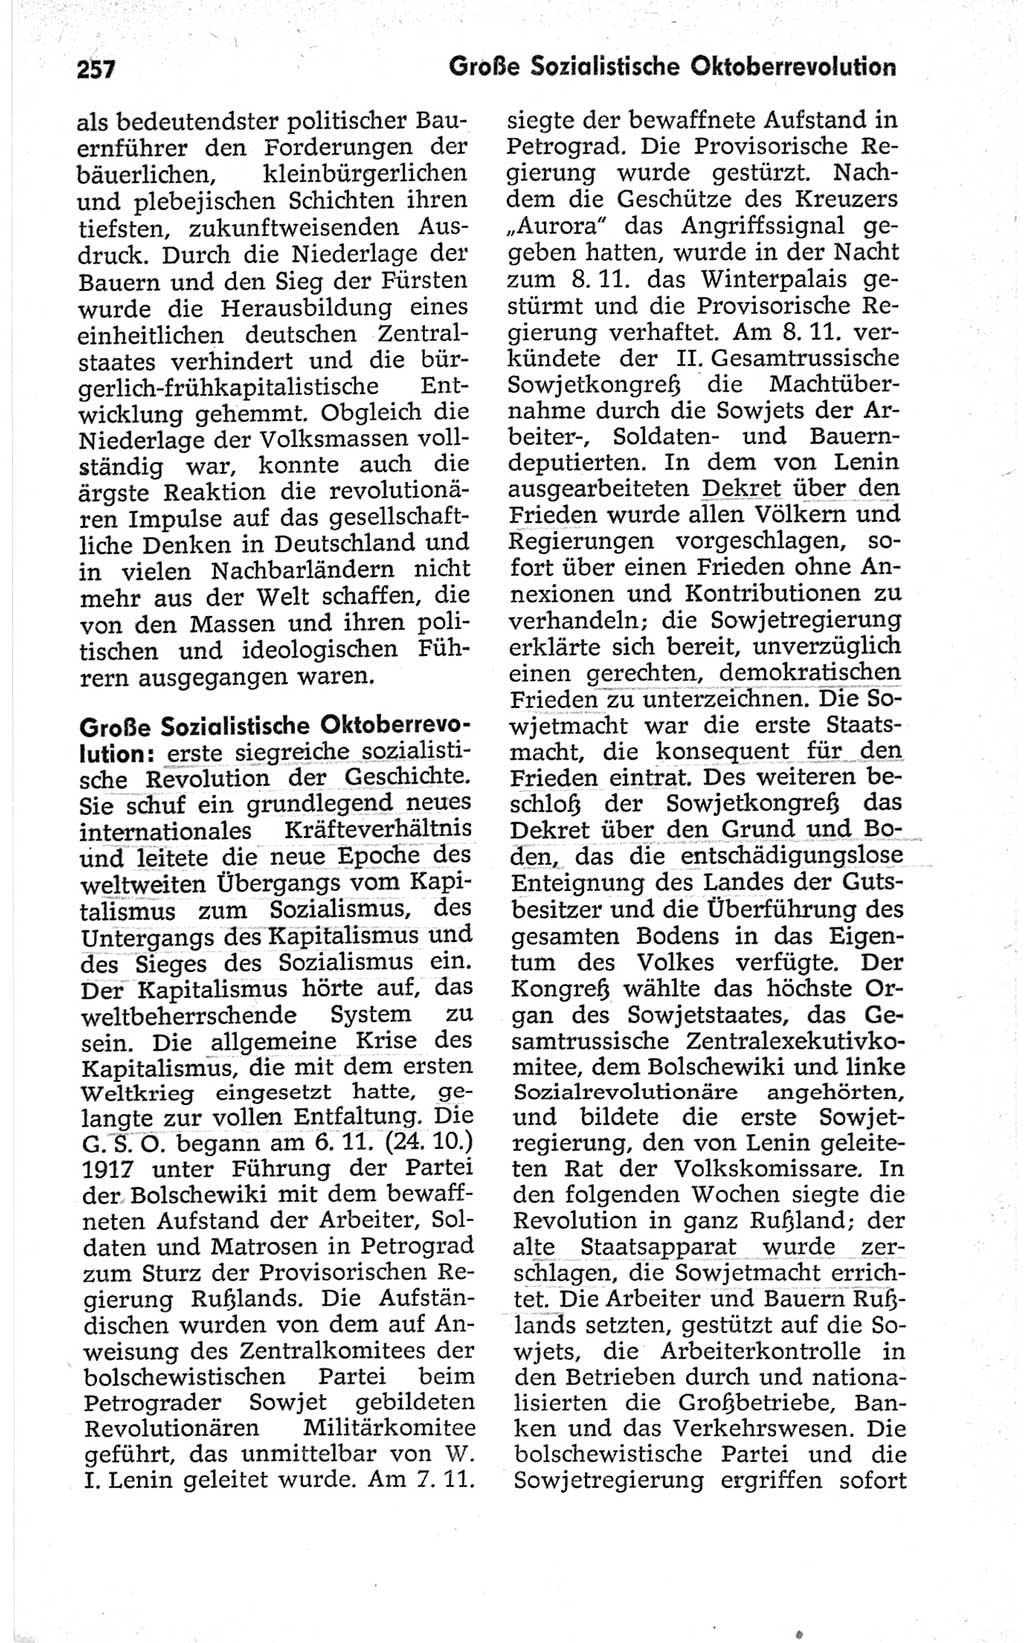 Kleines politisches Wörterbuch [Deutsche Demokratische Republik (DDR)] 1967, Seite 257 (Kl. pol. Wb. DDR 1967, S. 257)